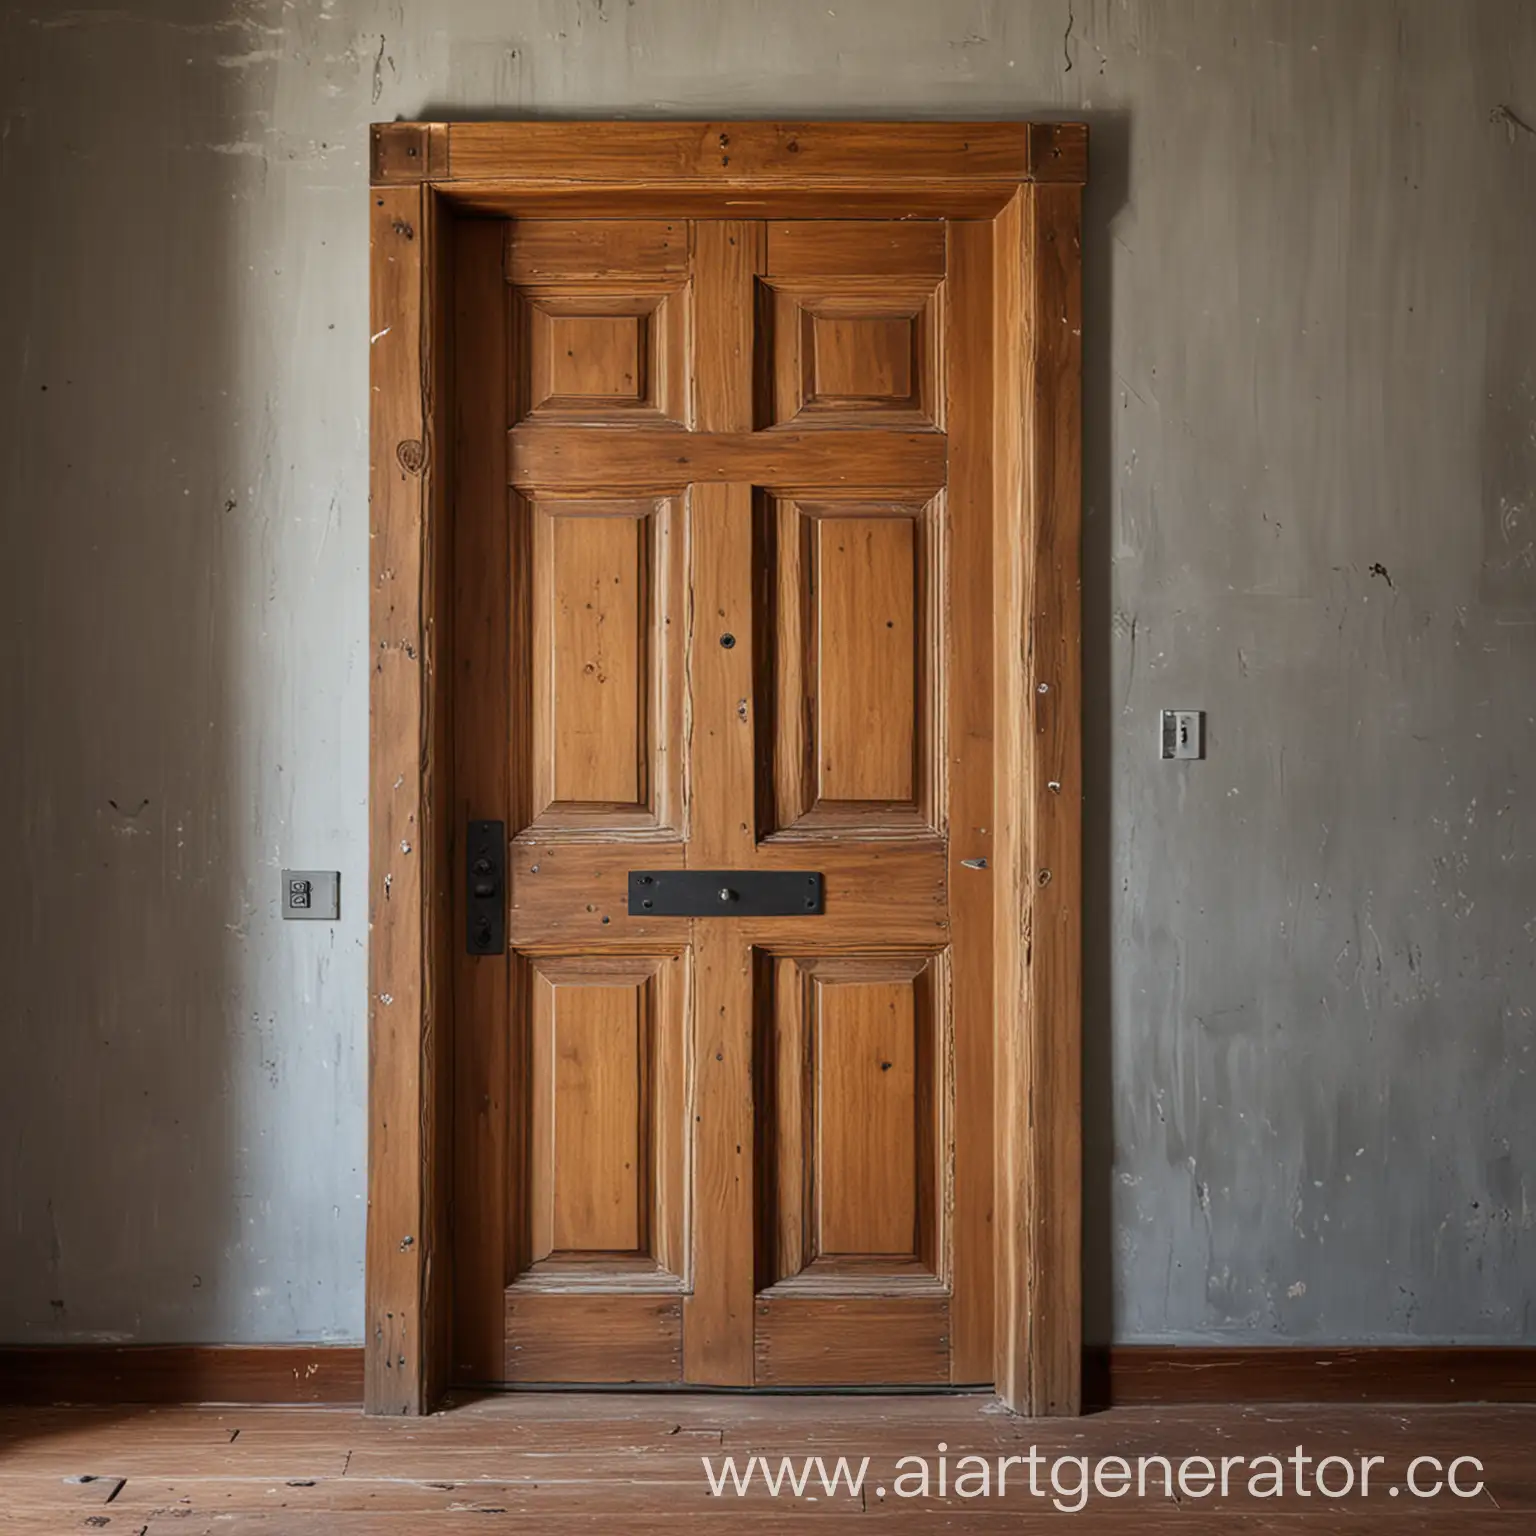 Rustic-Wooden-Door-in-Middle-of-Room